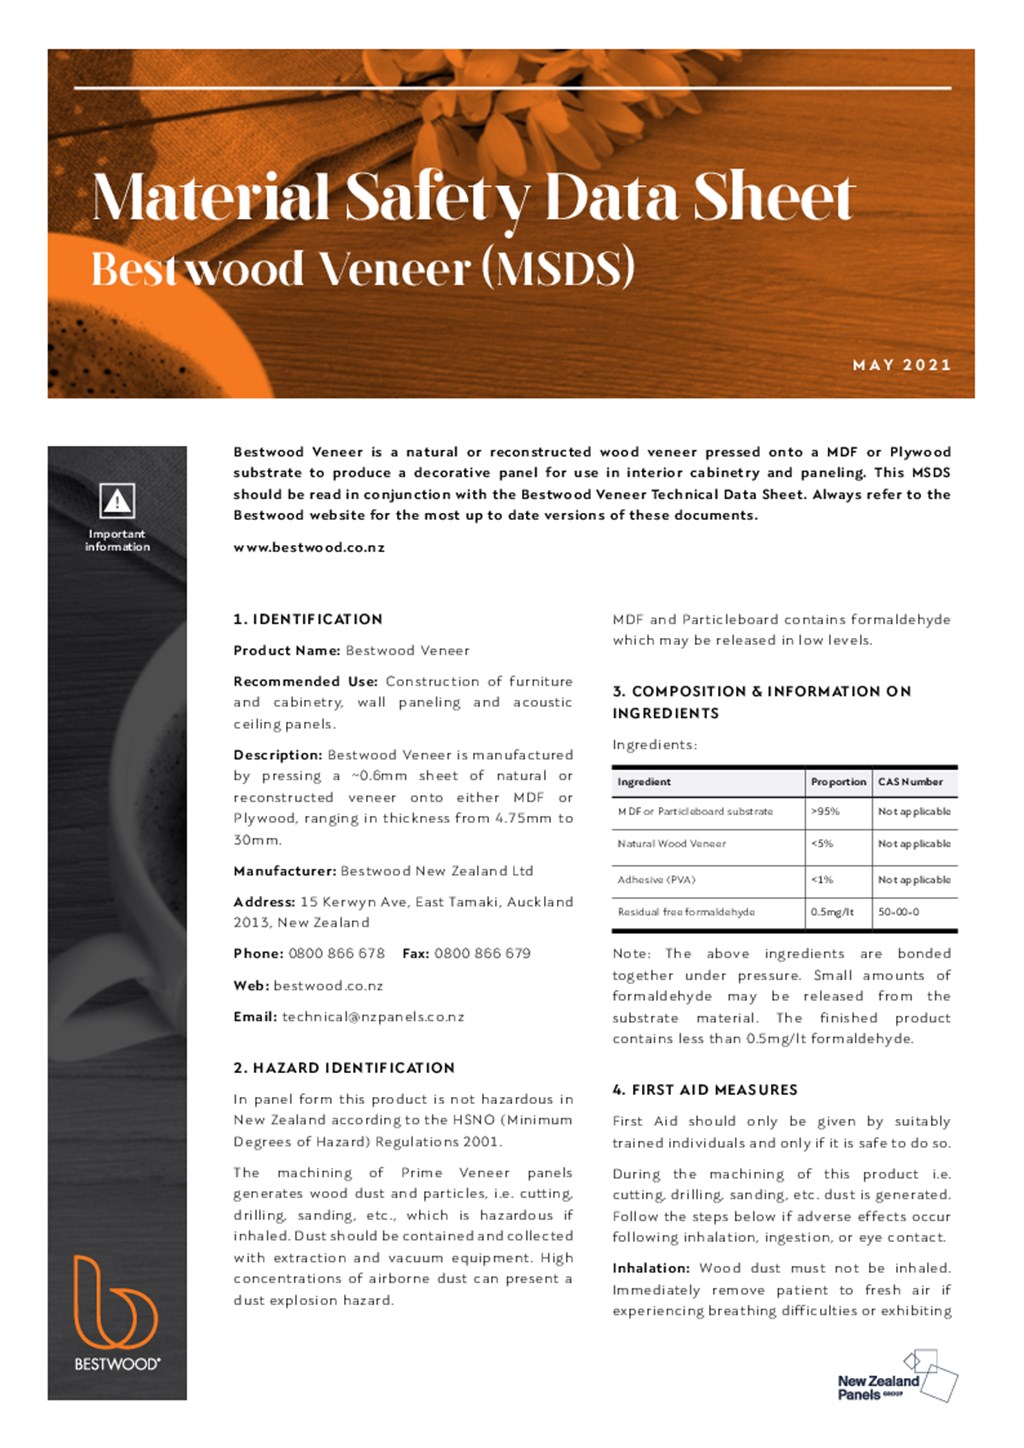 Bestwood Veneer MSDS